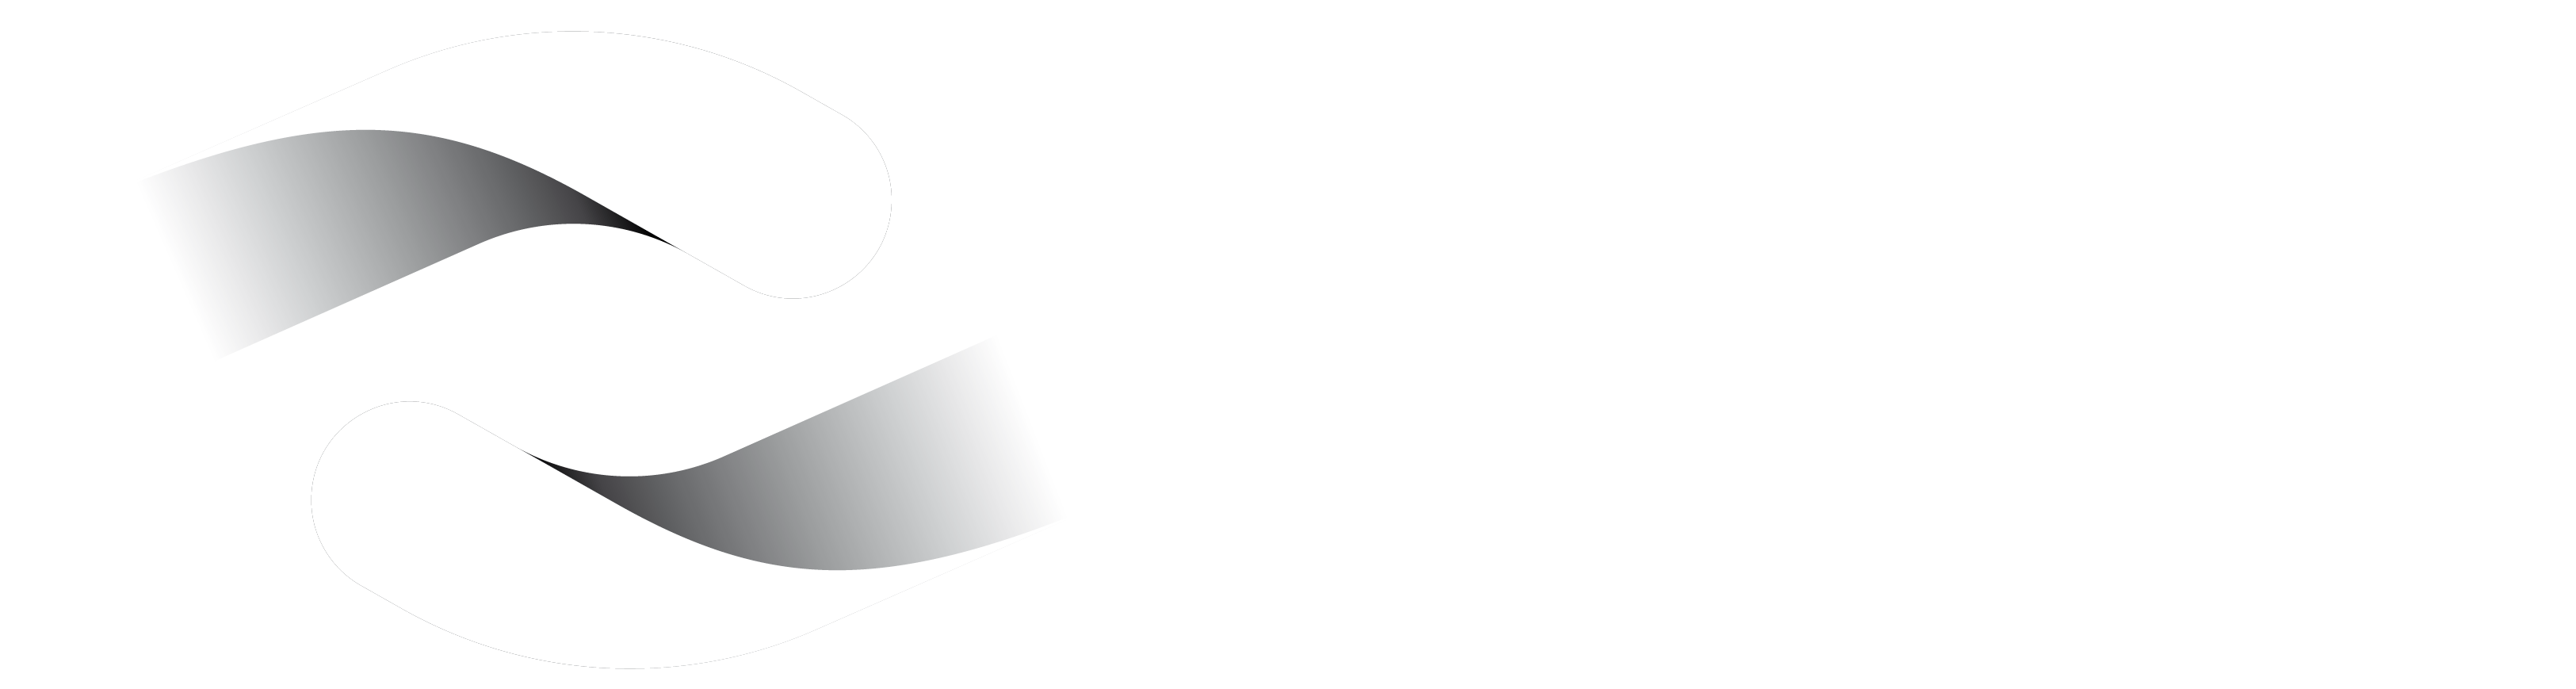 logo Communauté de communes de Thann Cernay